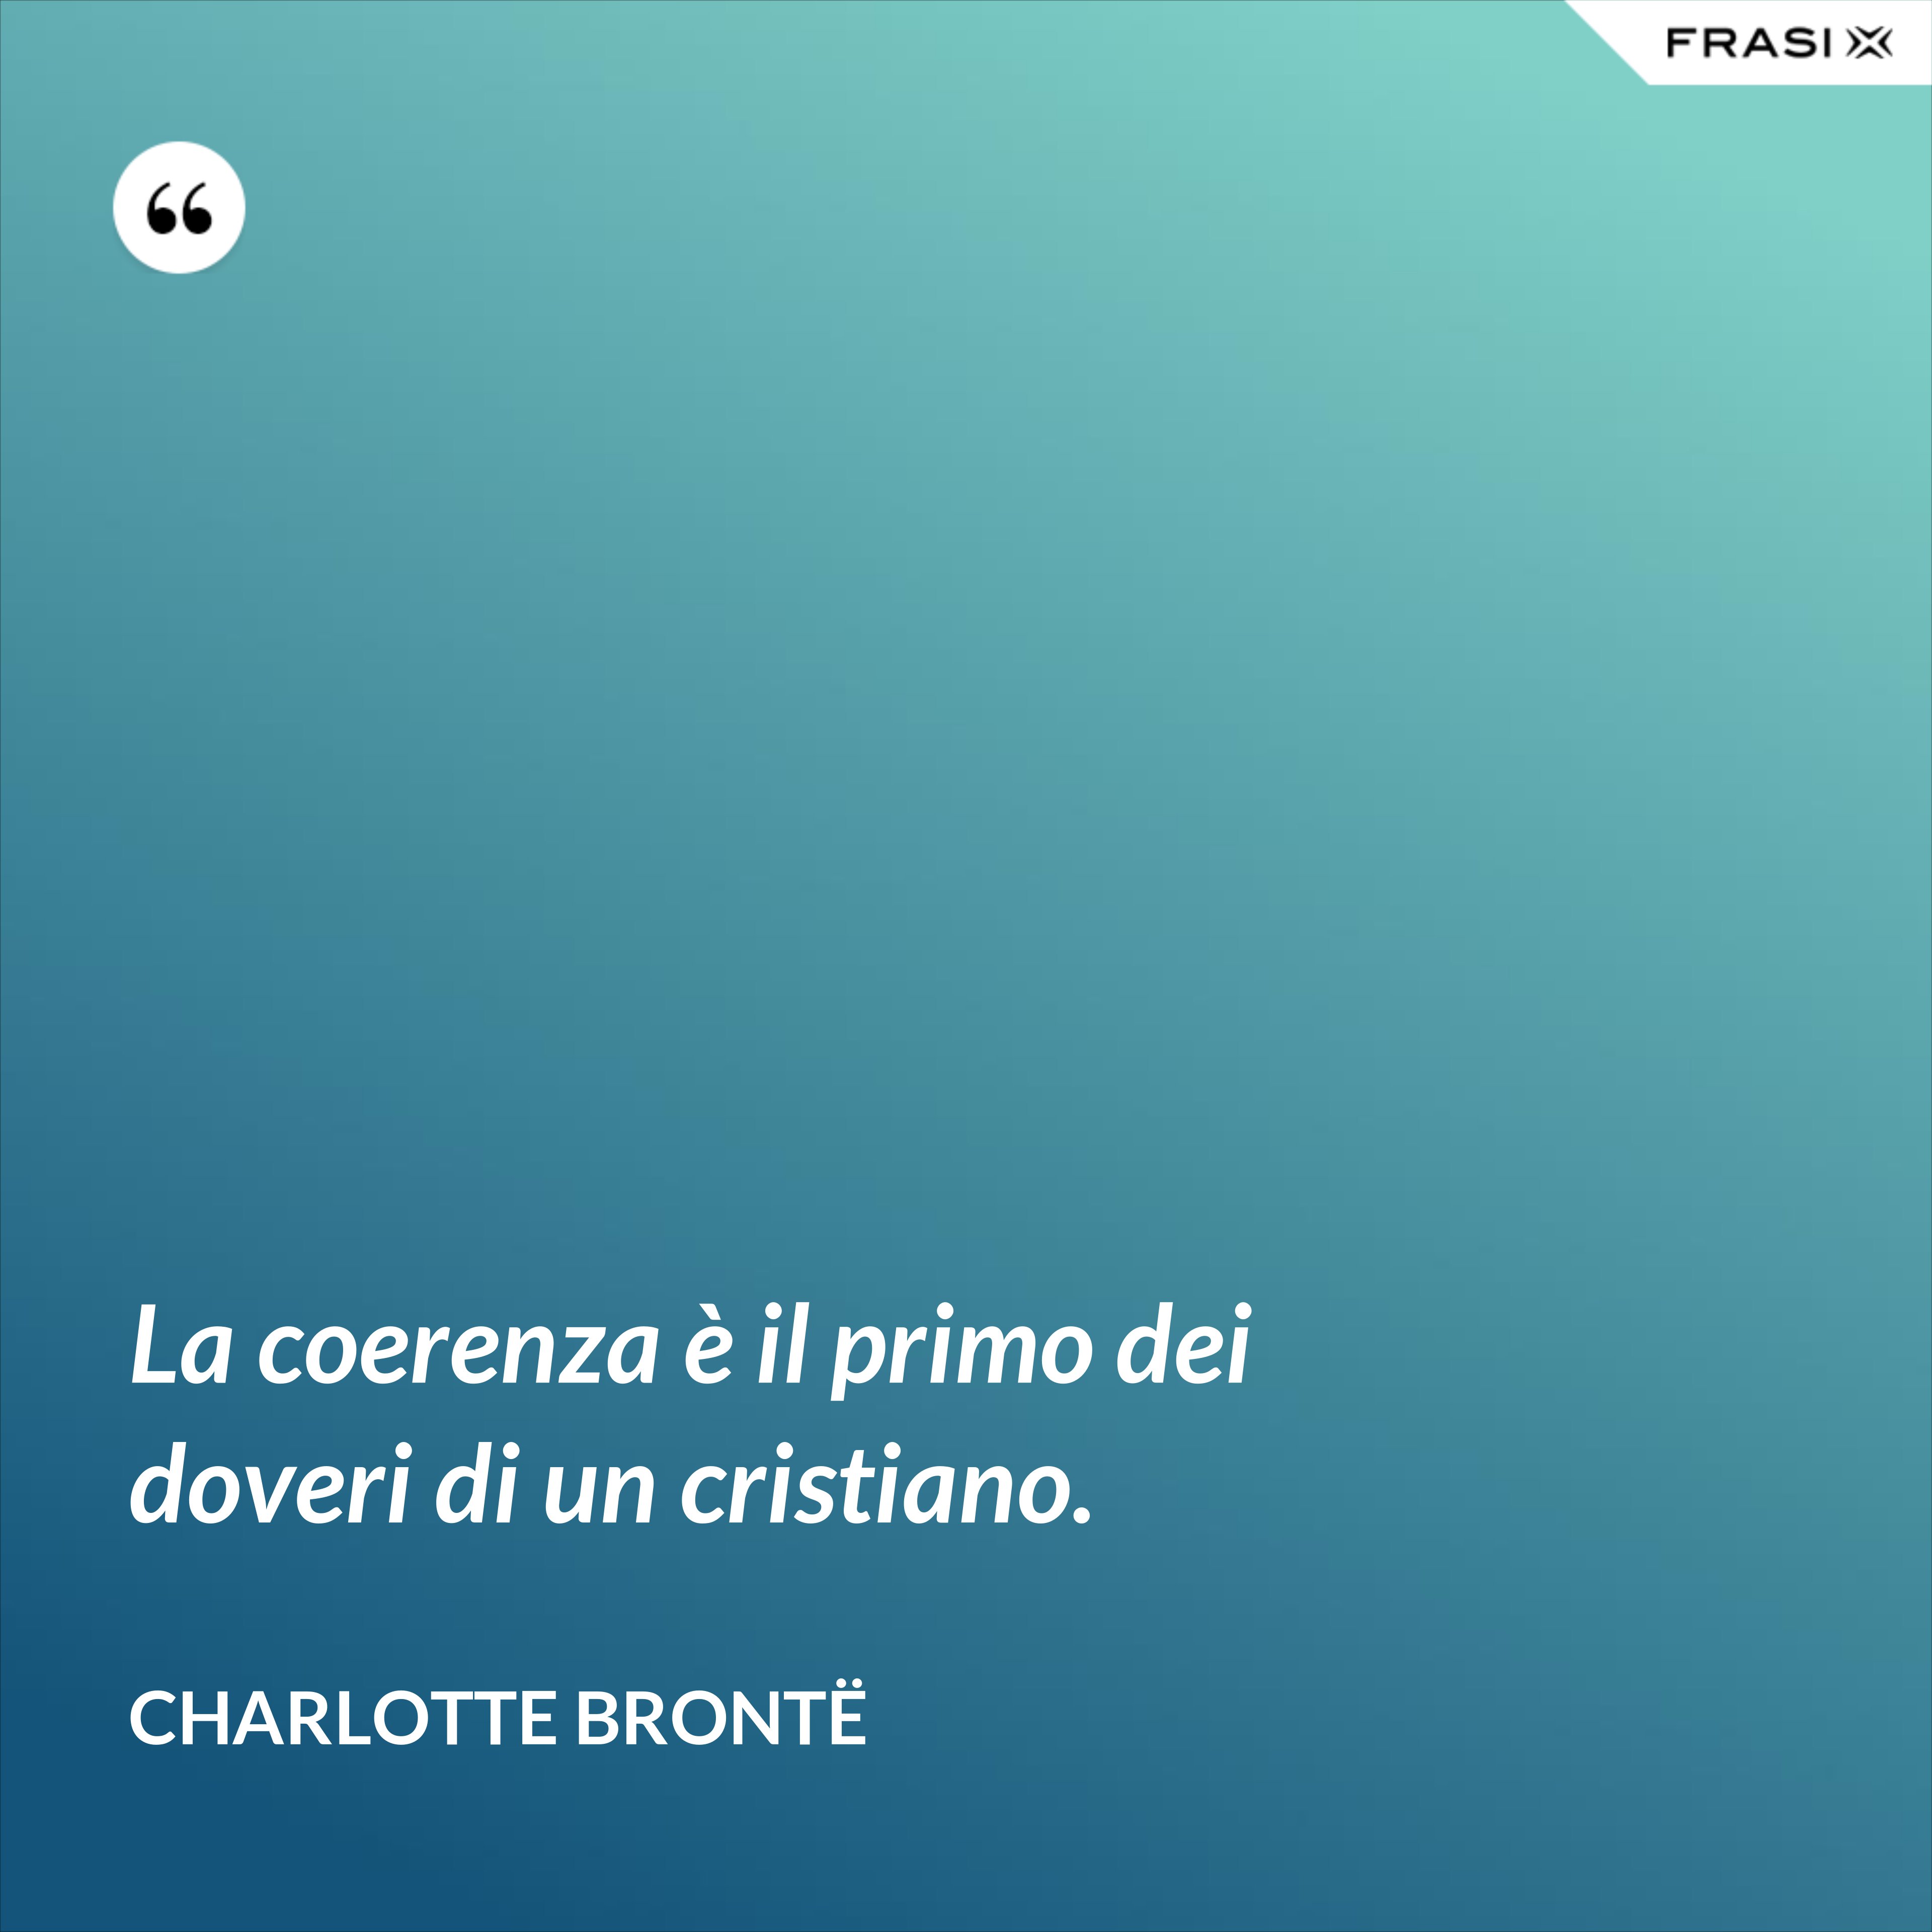 La coerenza è il primo dei doveri di un cristiano. - Charlotte Brontë